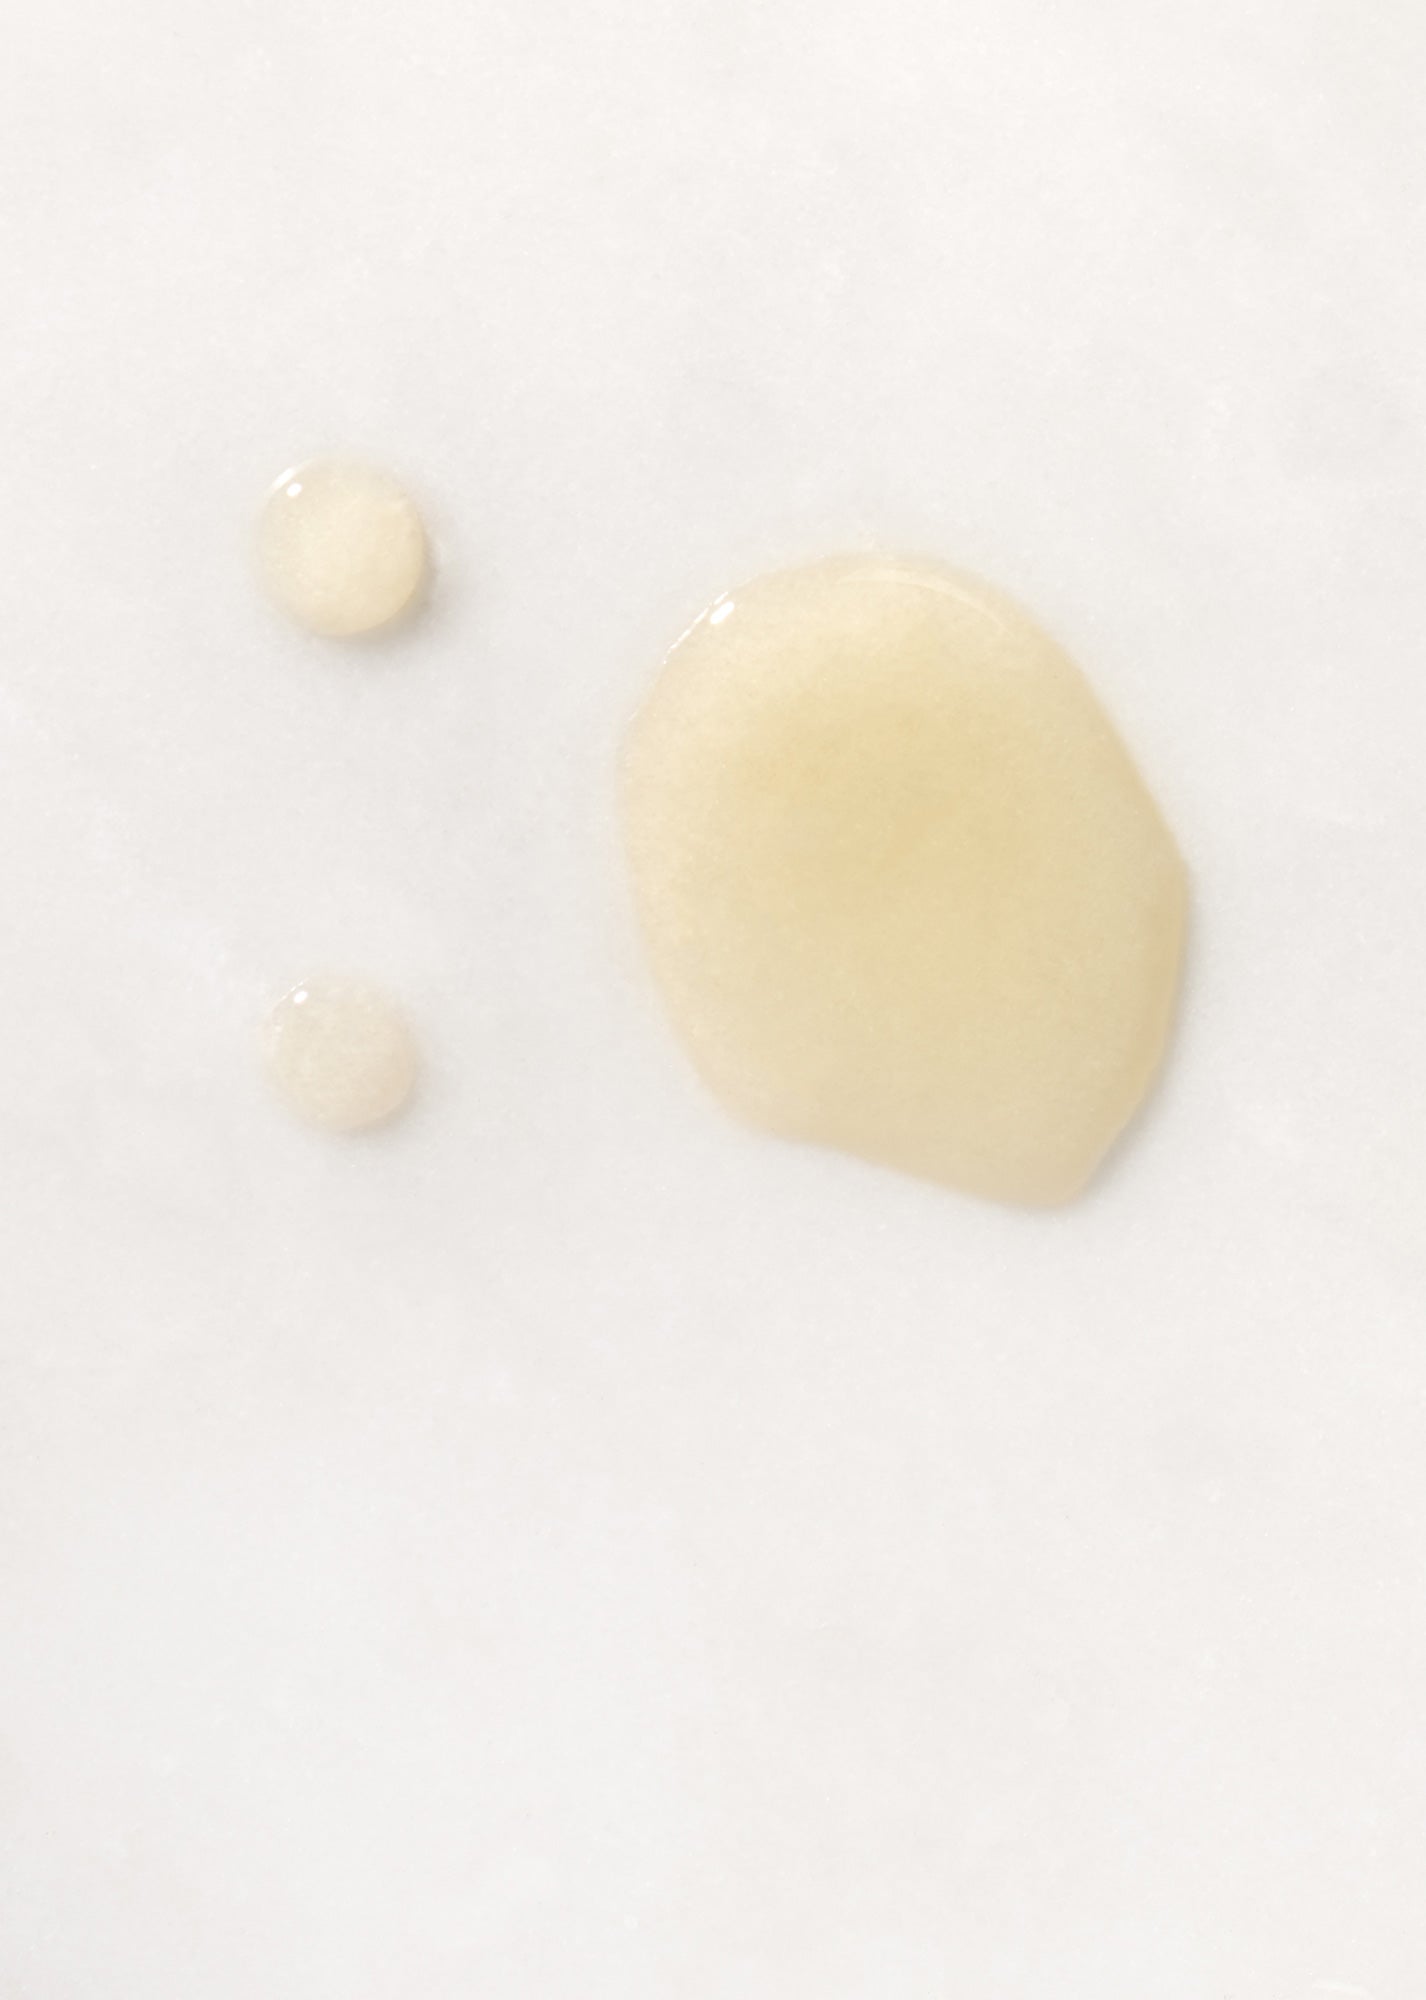 Drops of golden Olio Per Il Corpo Body Oil on white background.